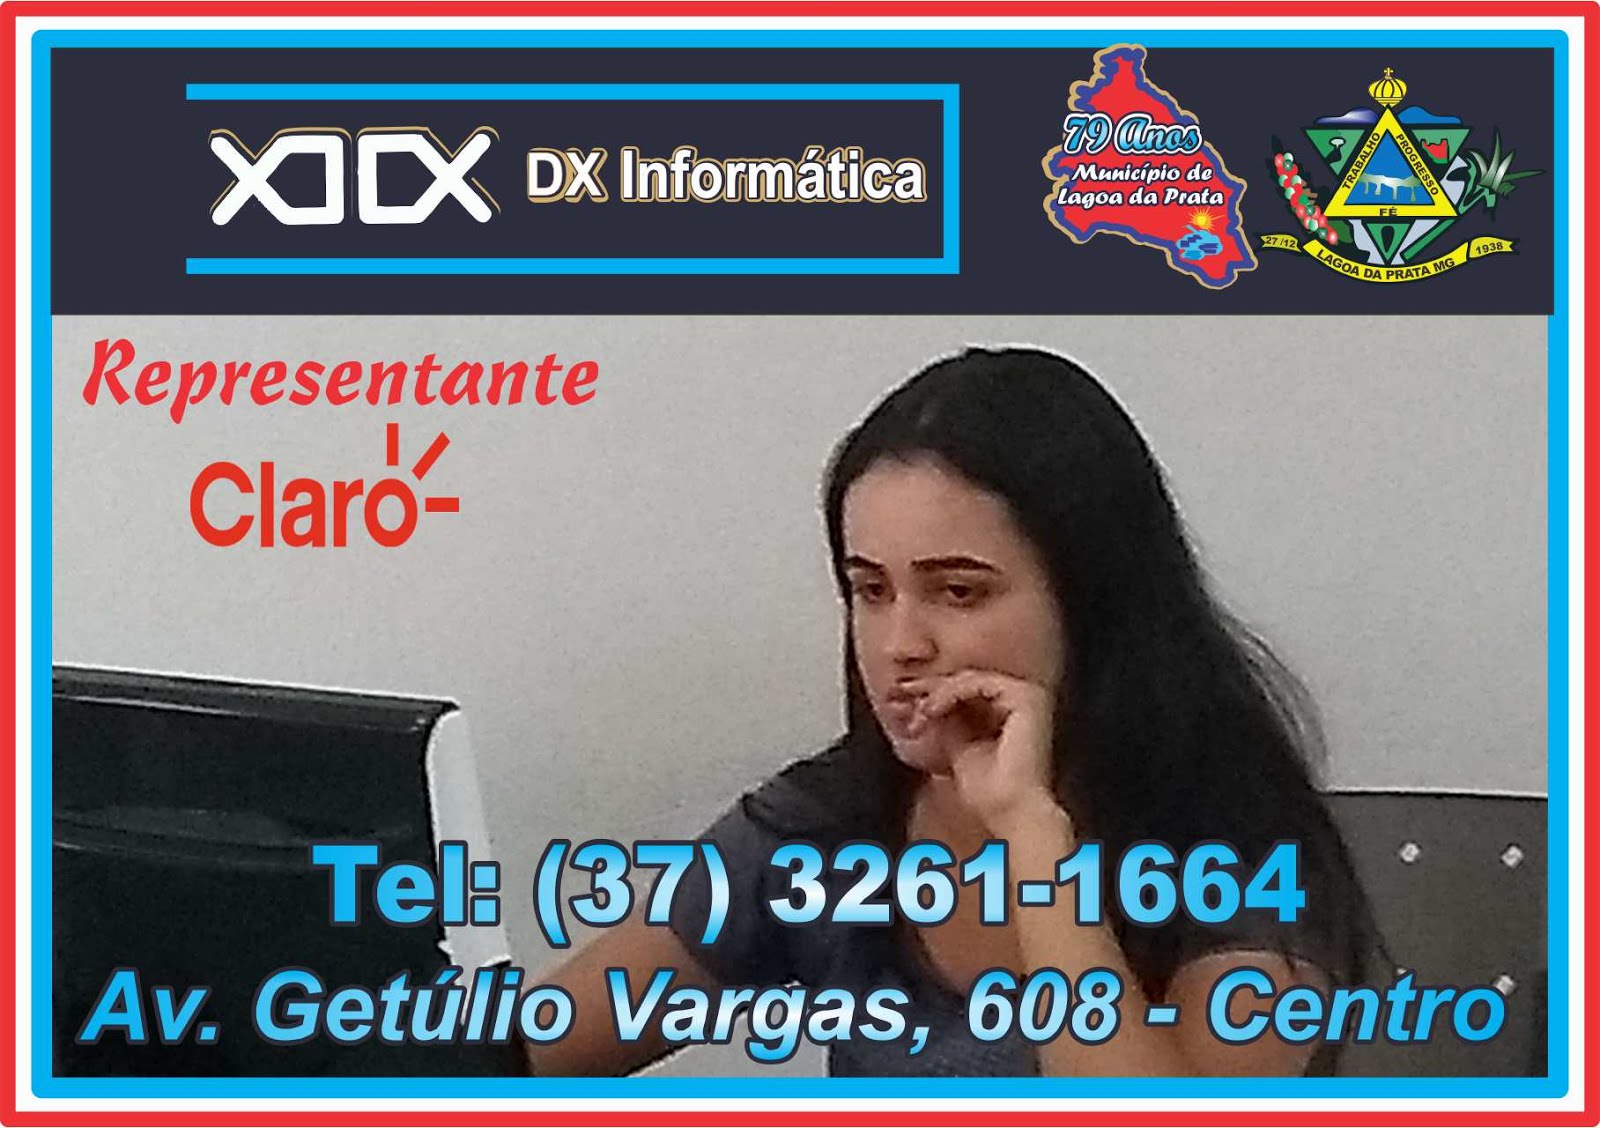 DX  Informática - Tel: (37) 3261-1664 / 3261-1080  ***